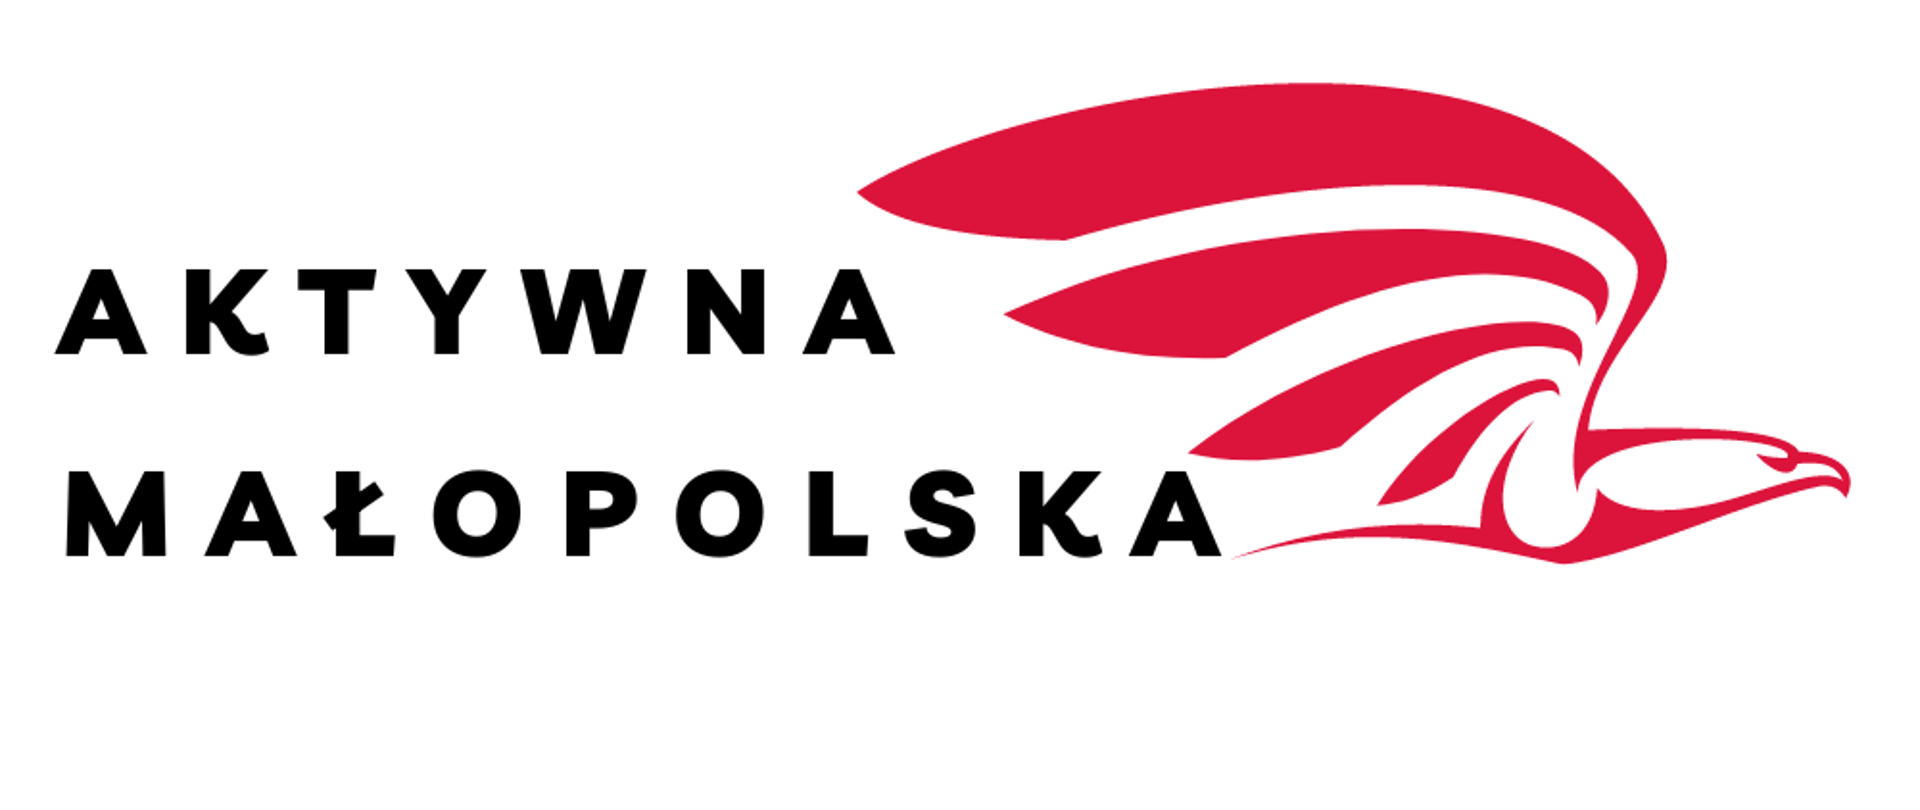 Aktywna Małopolska- logo. Na białym tle czarny napis Aktywna Małopolska, z prawej strony napisu czerwony zarys orła w locie skierowany prawym profilem. 